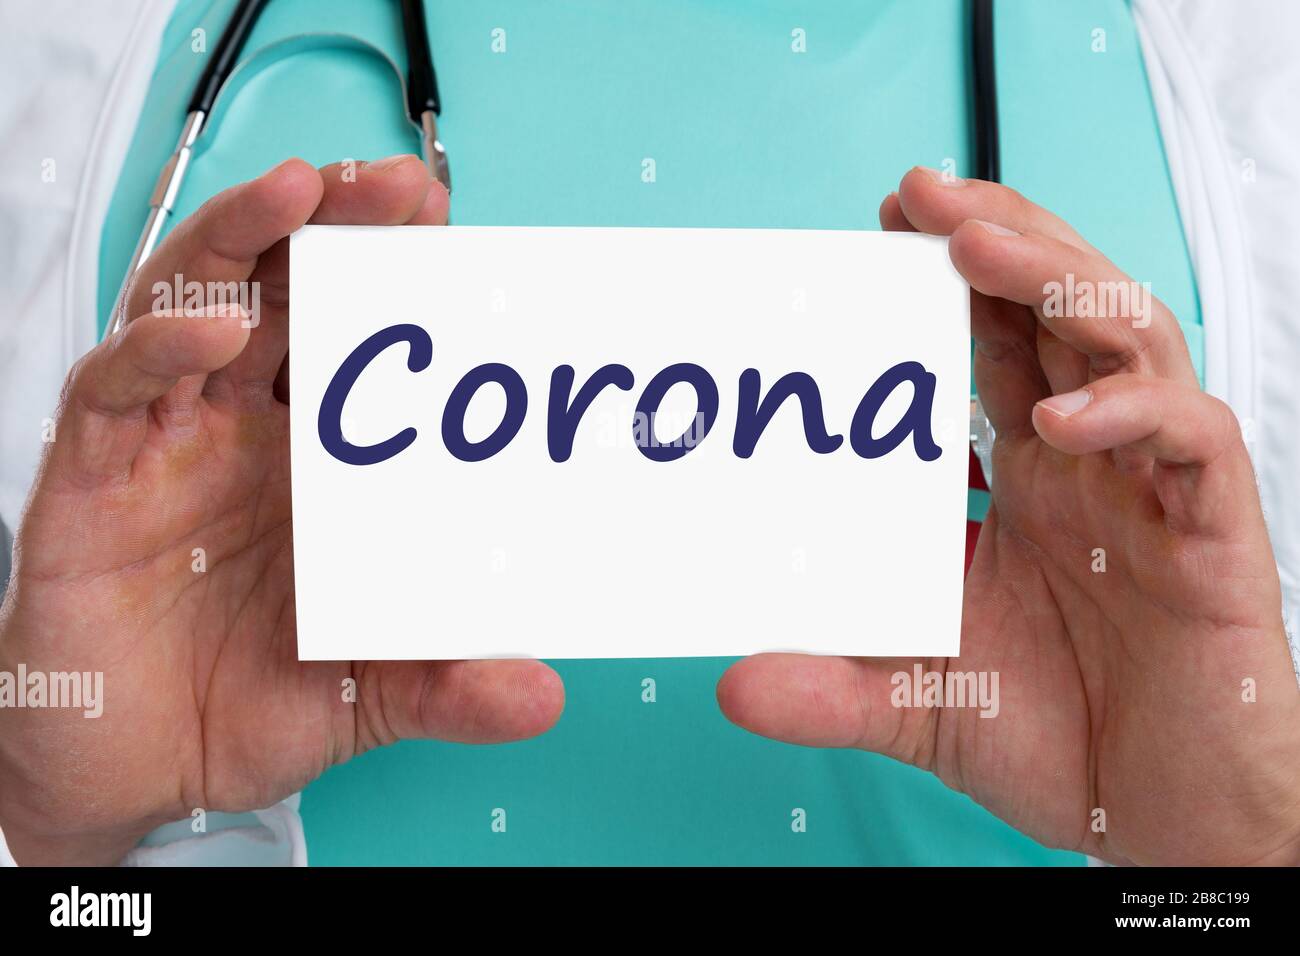 Corona virus coronavirus diagnosis disease doctor ill illness with sign Stock Photo